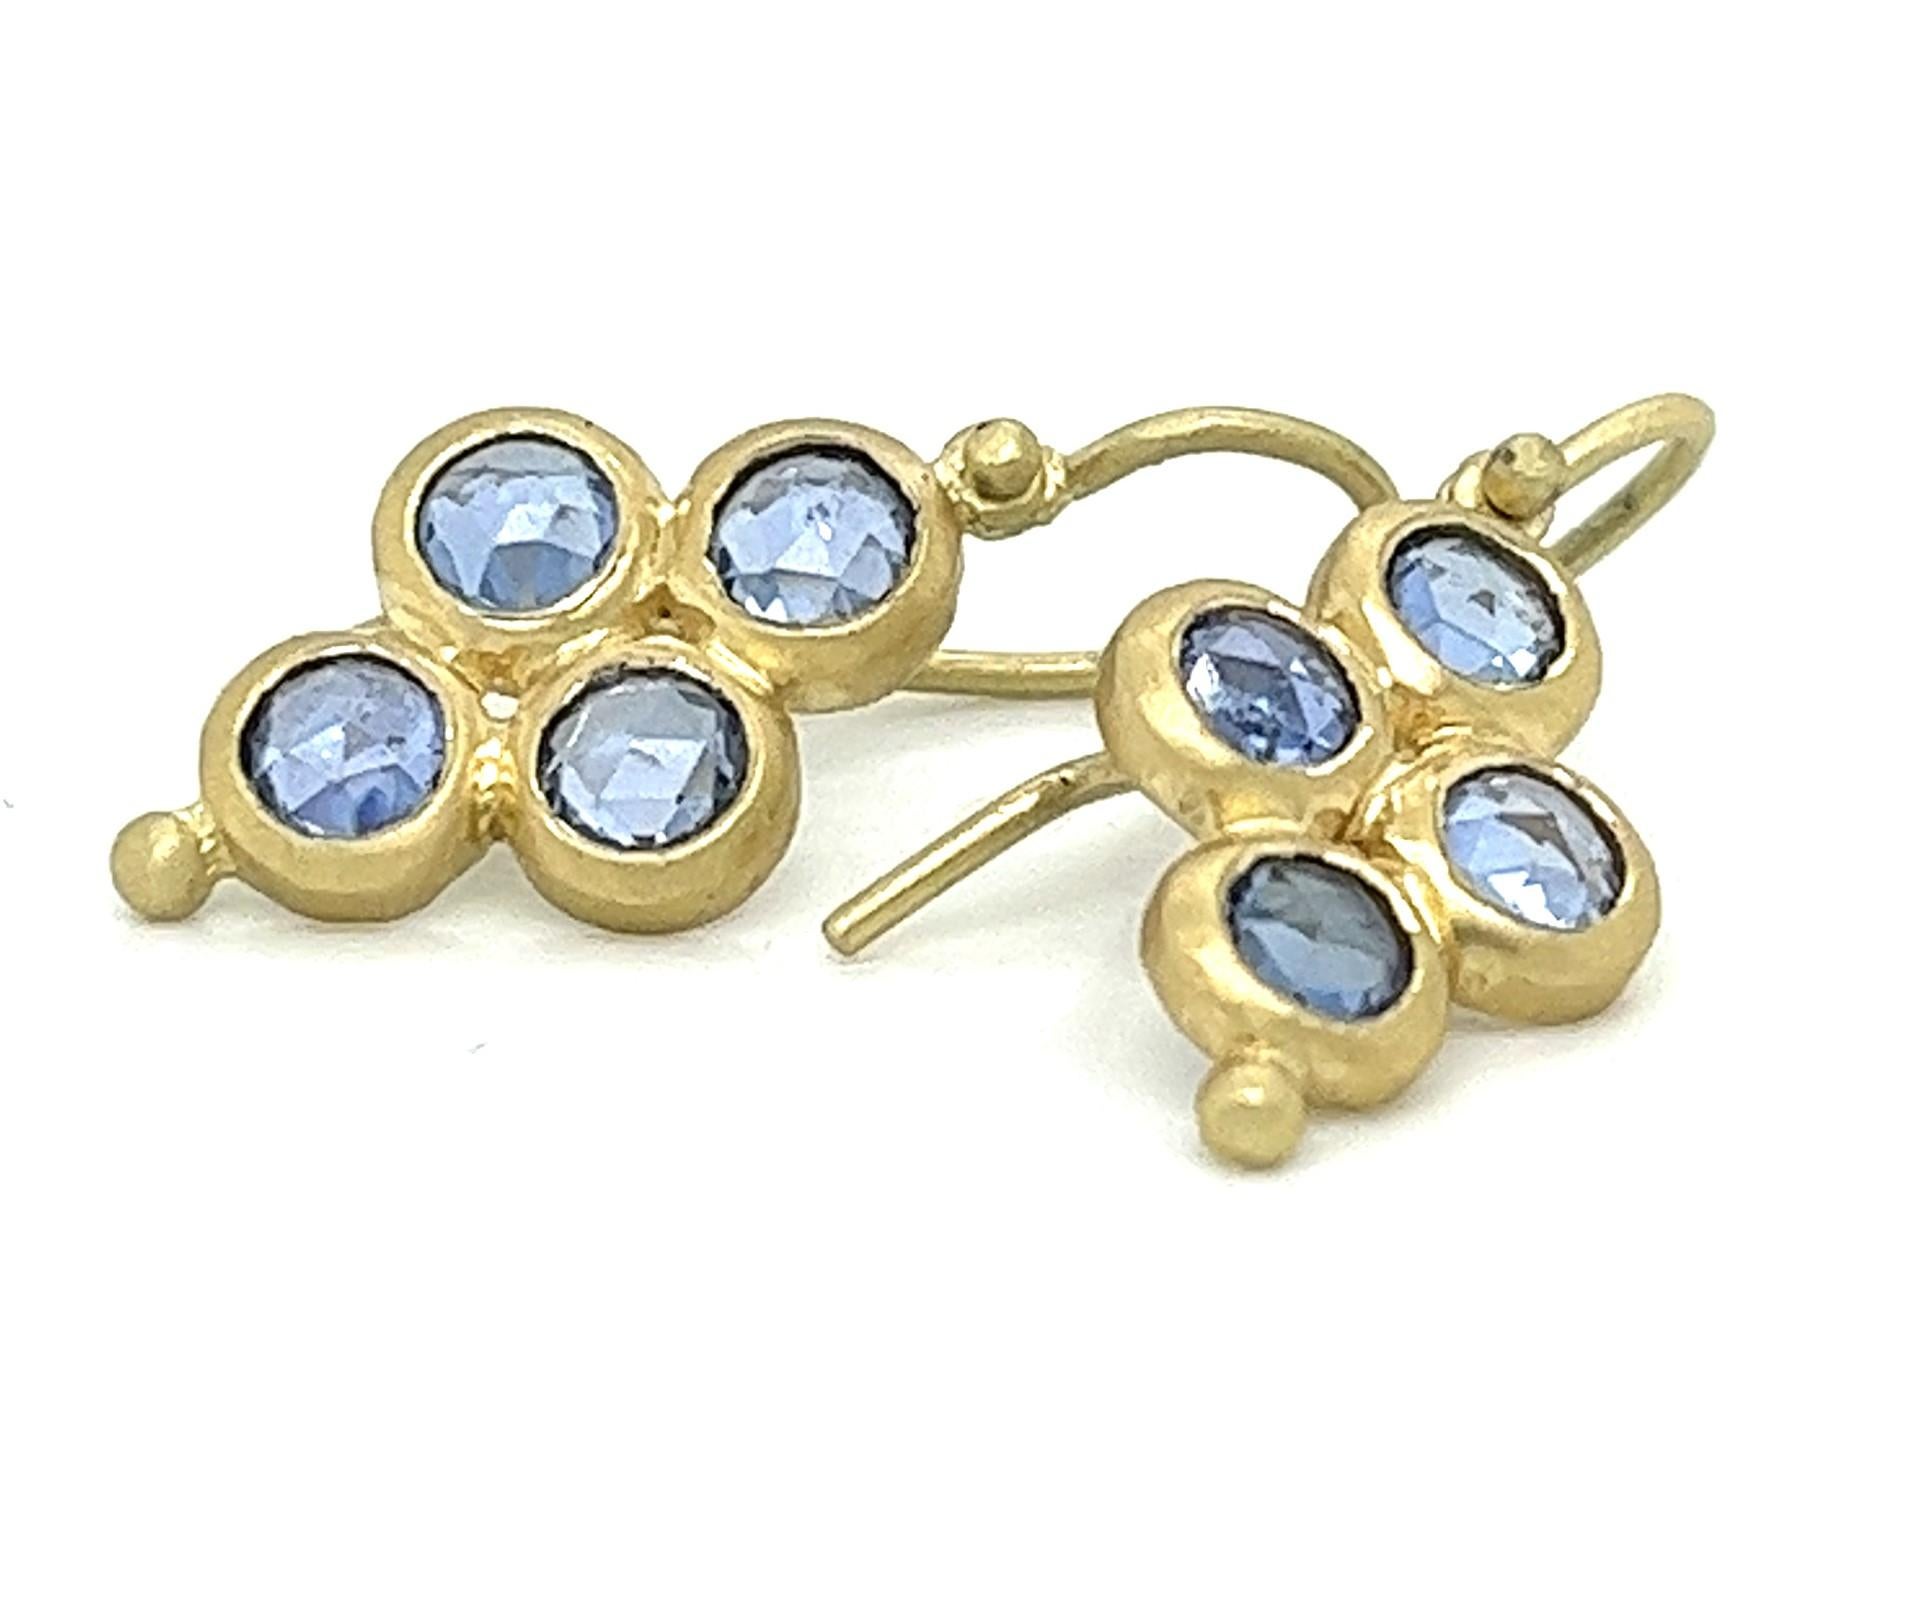 Die Quad Drop Earrings von Faye Kim mit blauem Saphir im Rosenschliff und Scharnier sind handgefertigt aus 18 Karat Gold. Das Vierer-Design mit klappbaren Ohrringen und einer goldenen Perle an der Basis ist hell und lebendig mit Bewegung. Die